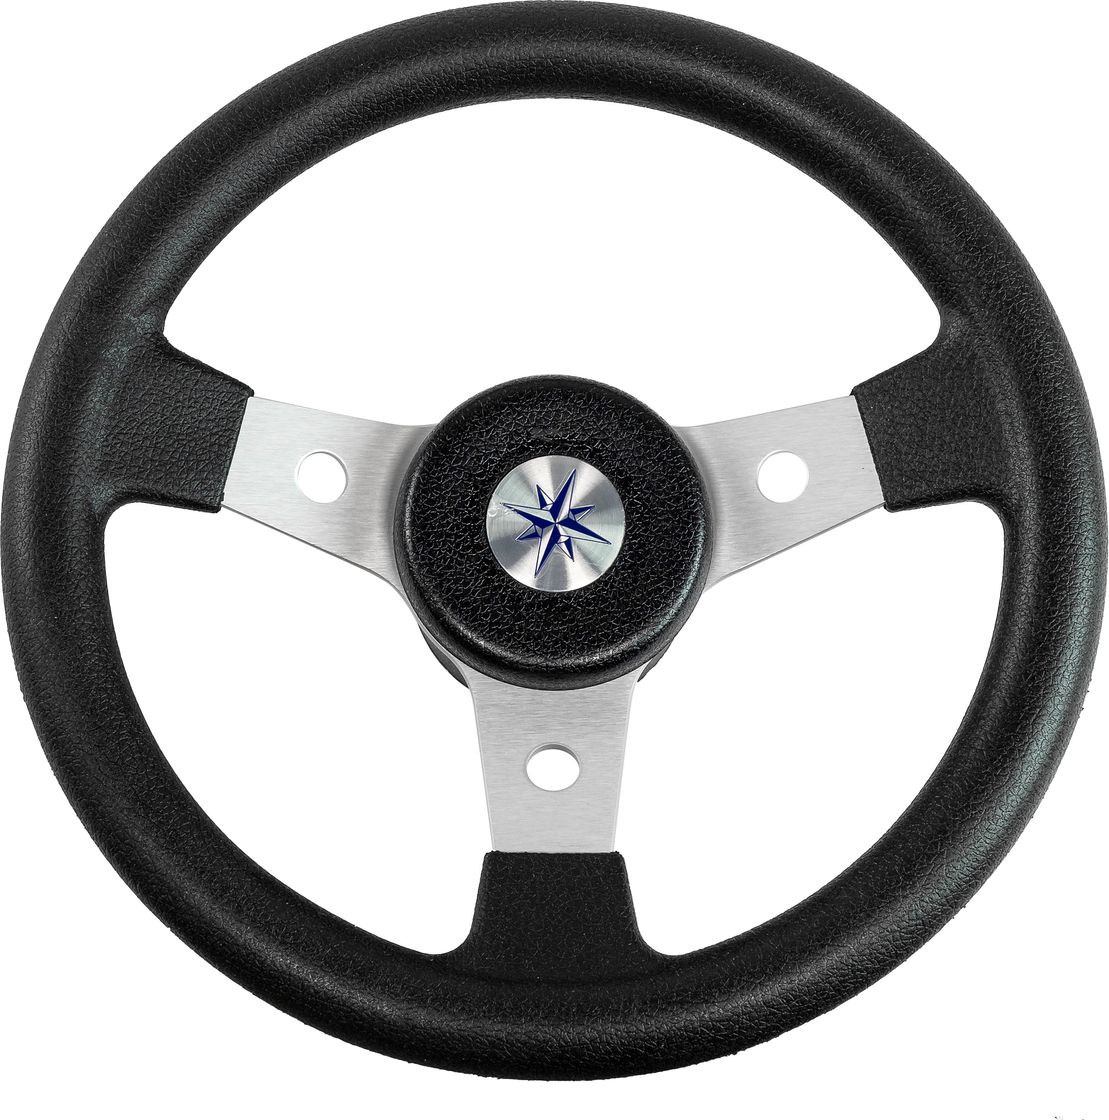 Рулевое колесо DELFINO обод черный,спицы серебряные д. 310 мм VN70103-01 рулевое колесо delfino обод спицы серебряные д 340 мм vn70401 01